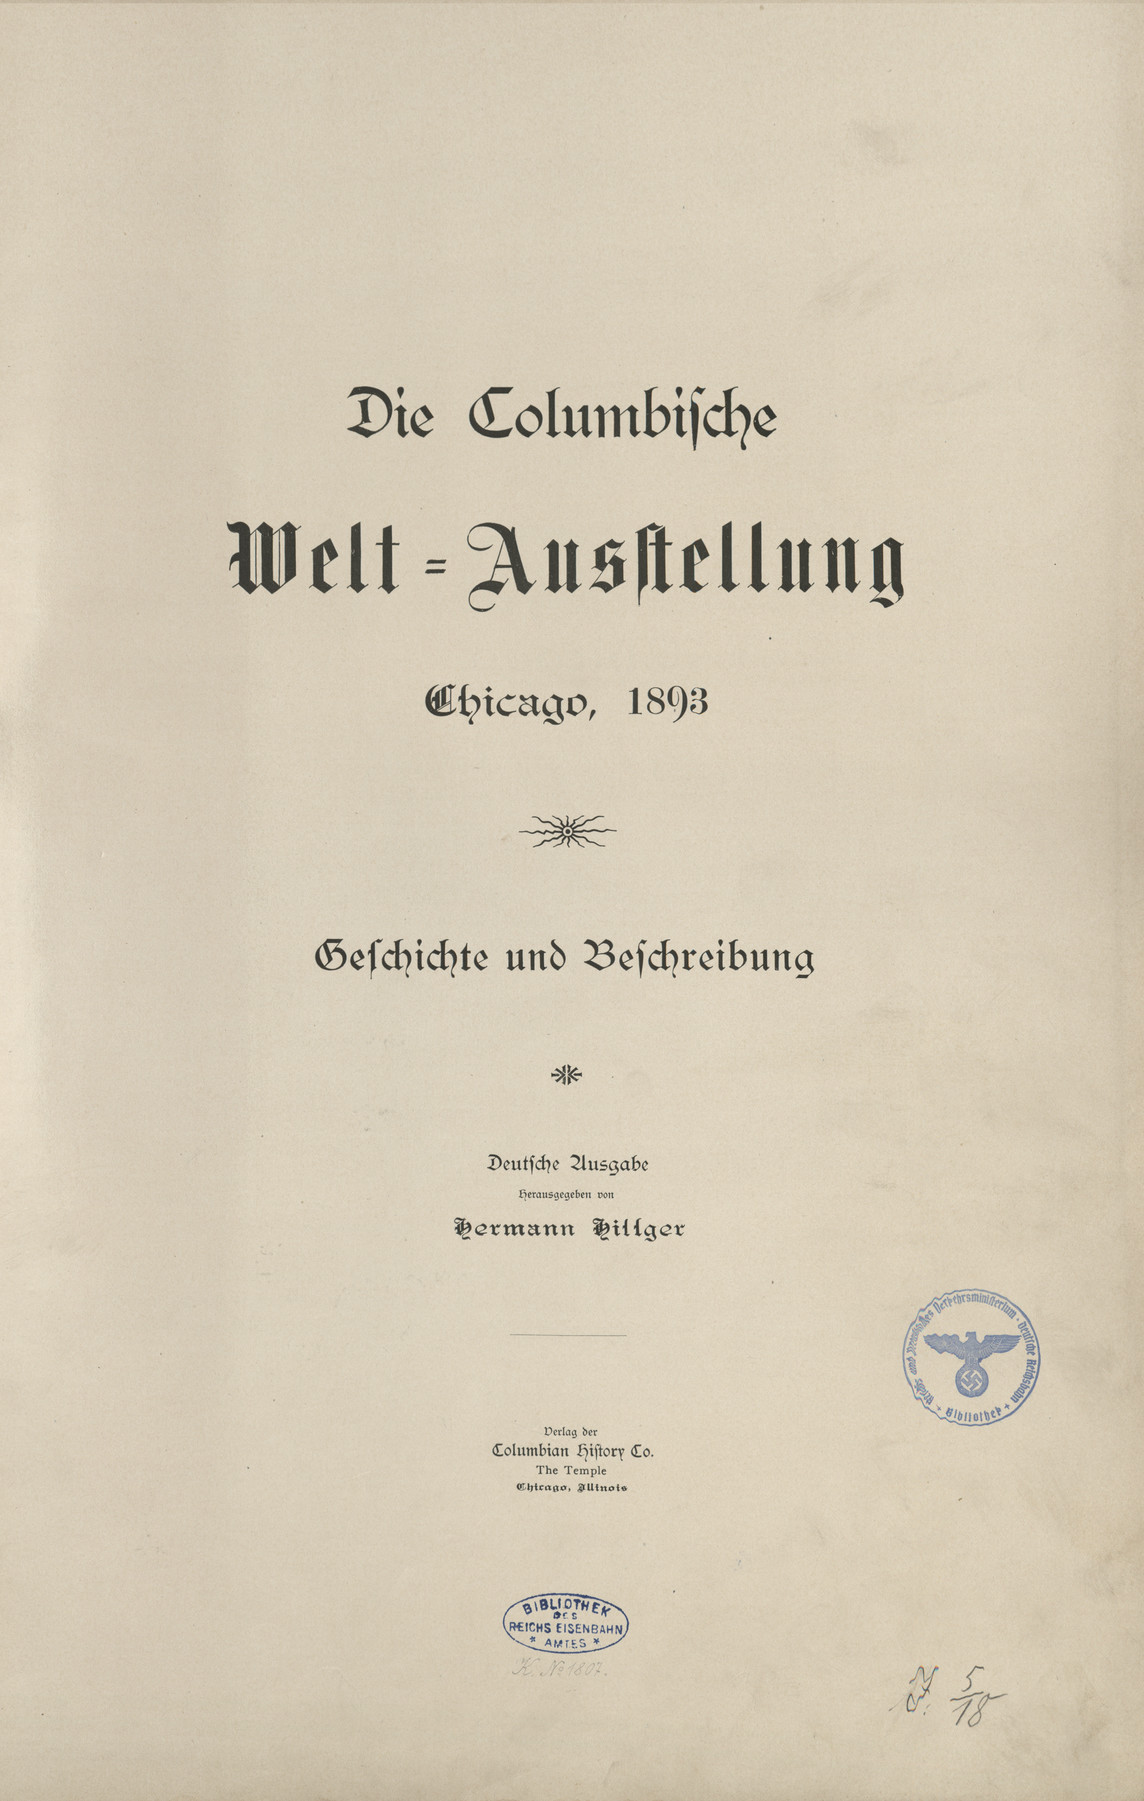 Die Columbische Welt=Ausstellung : Chicago, 1893 : Geschichte und Beschreibung